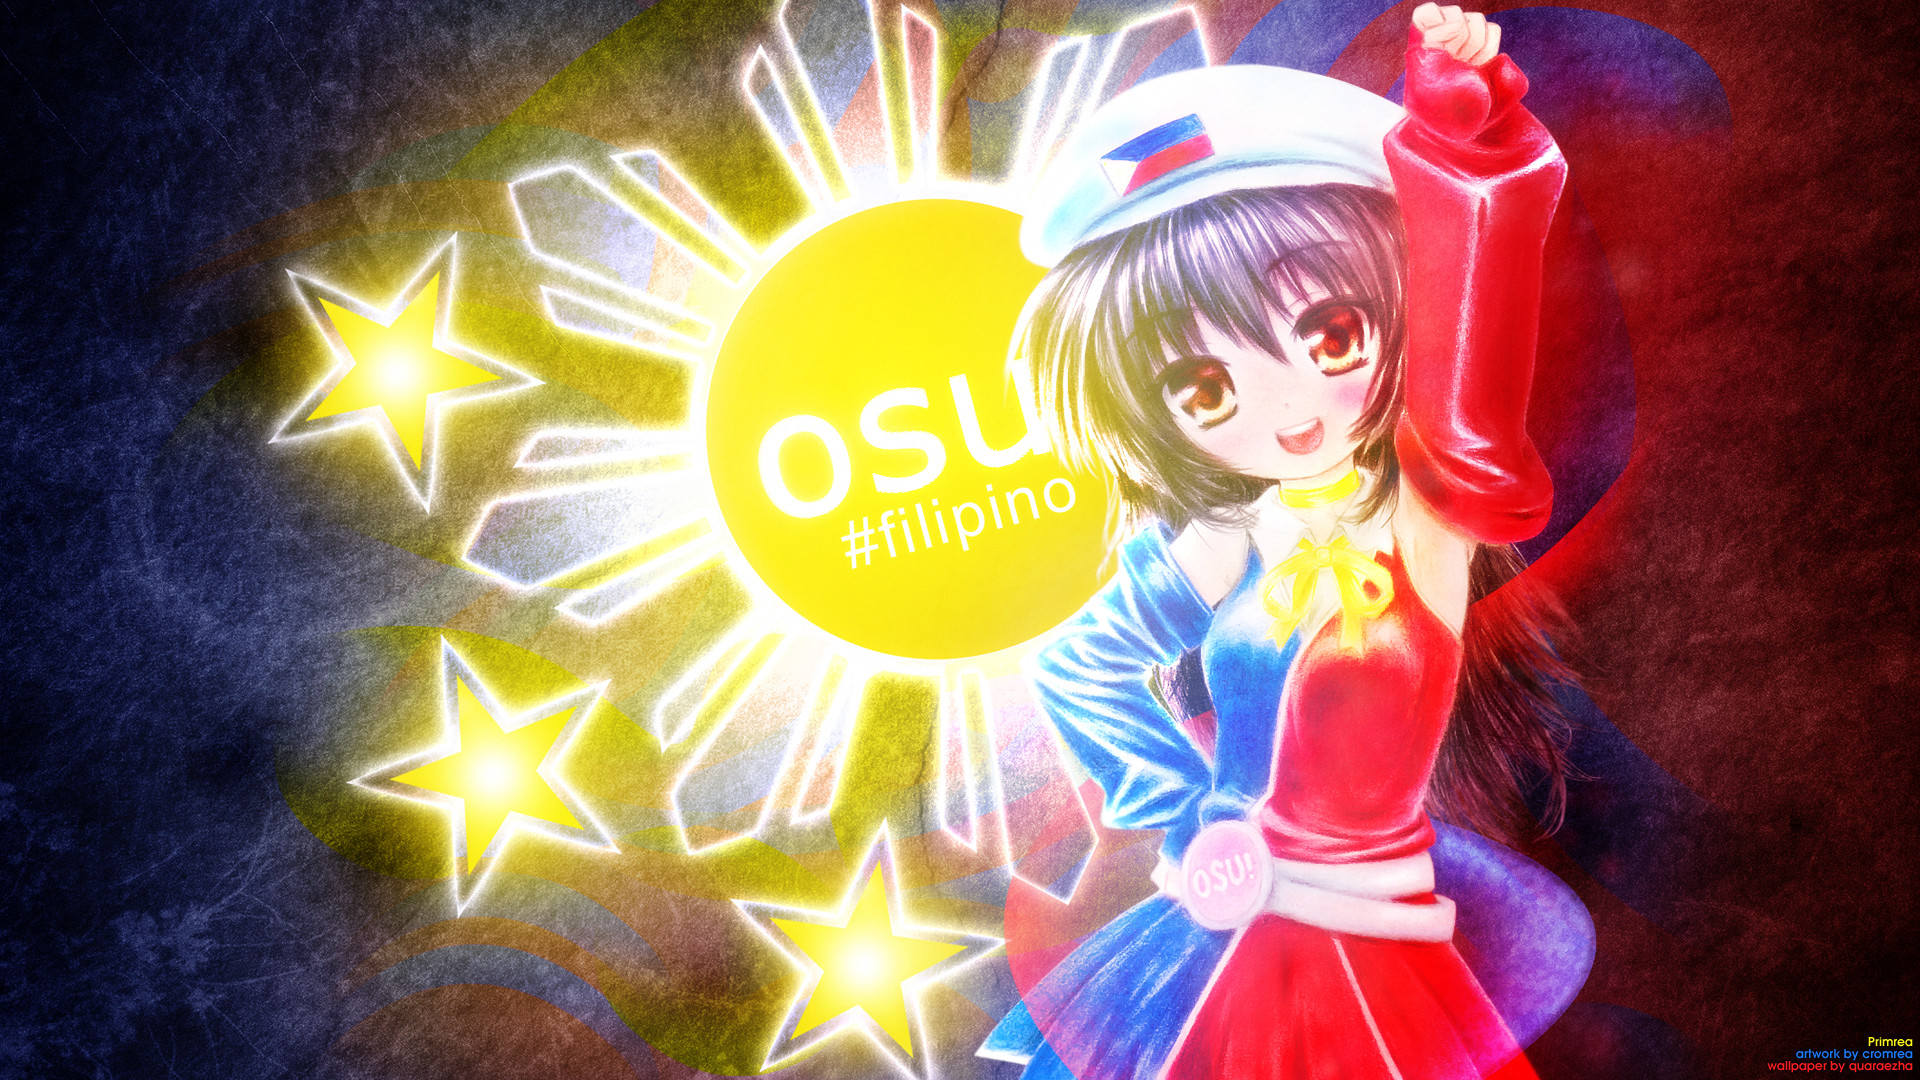 Osu Filipino , HD Wallpaper & Backgrounds